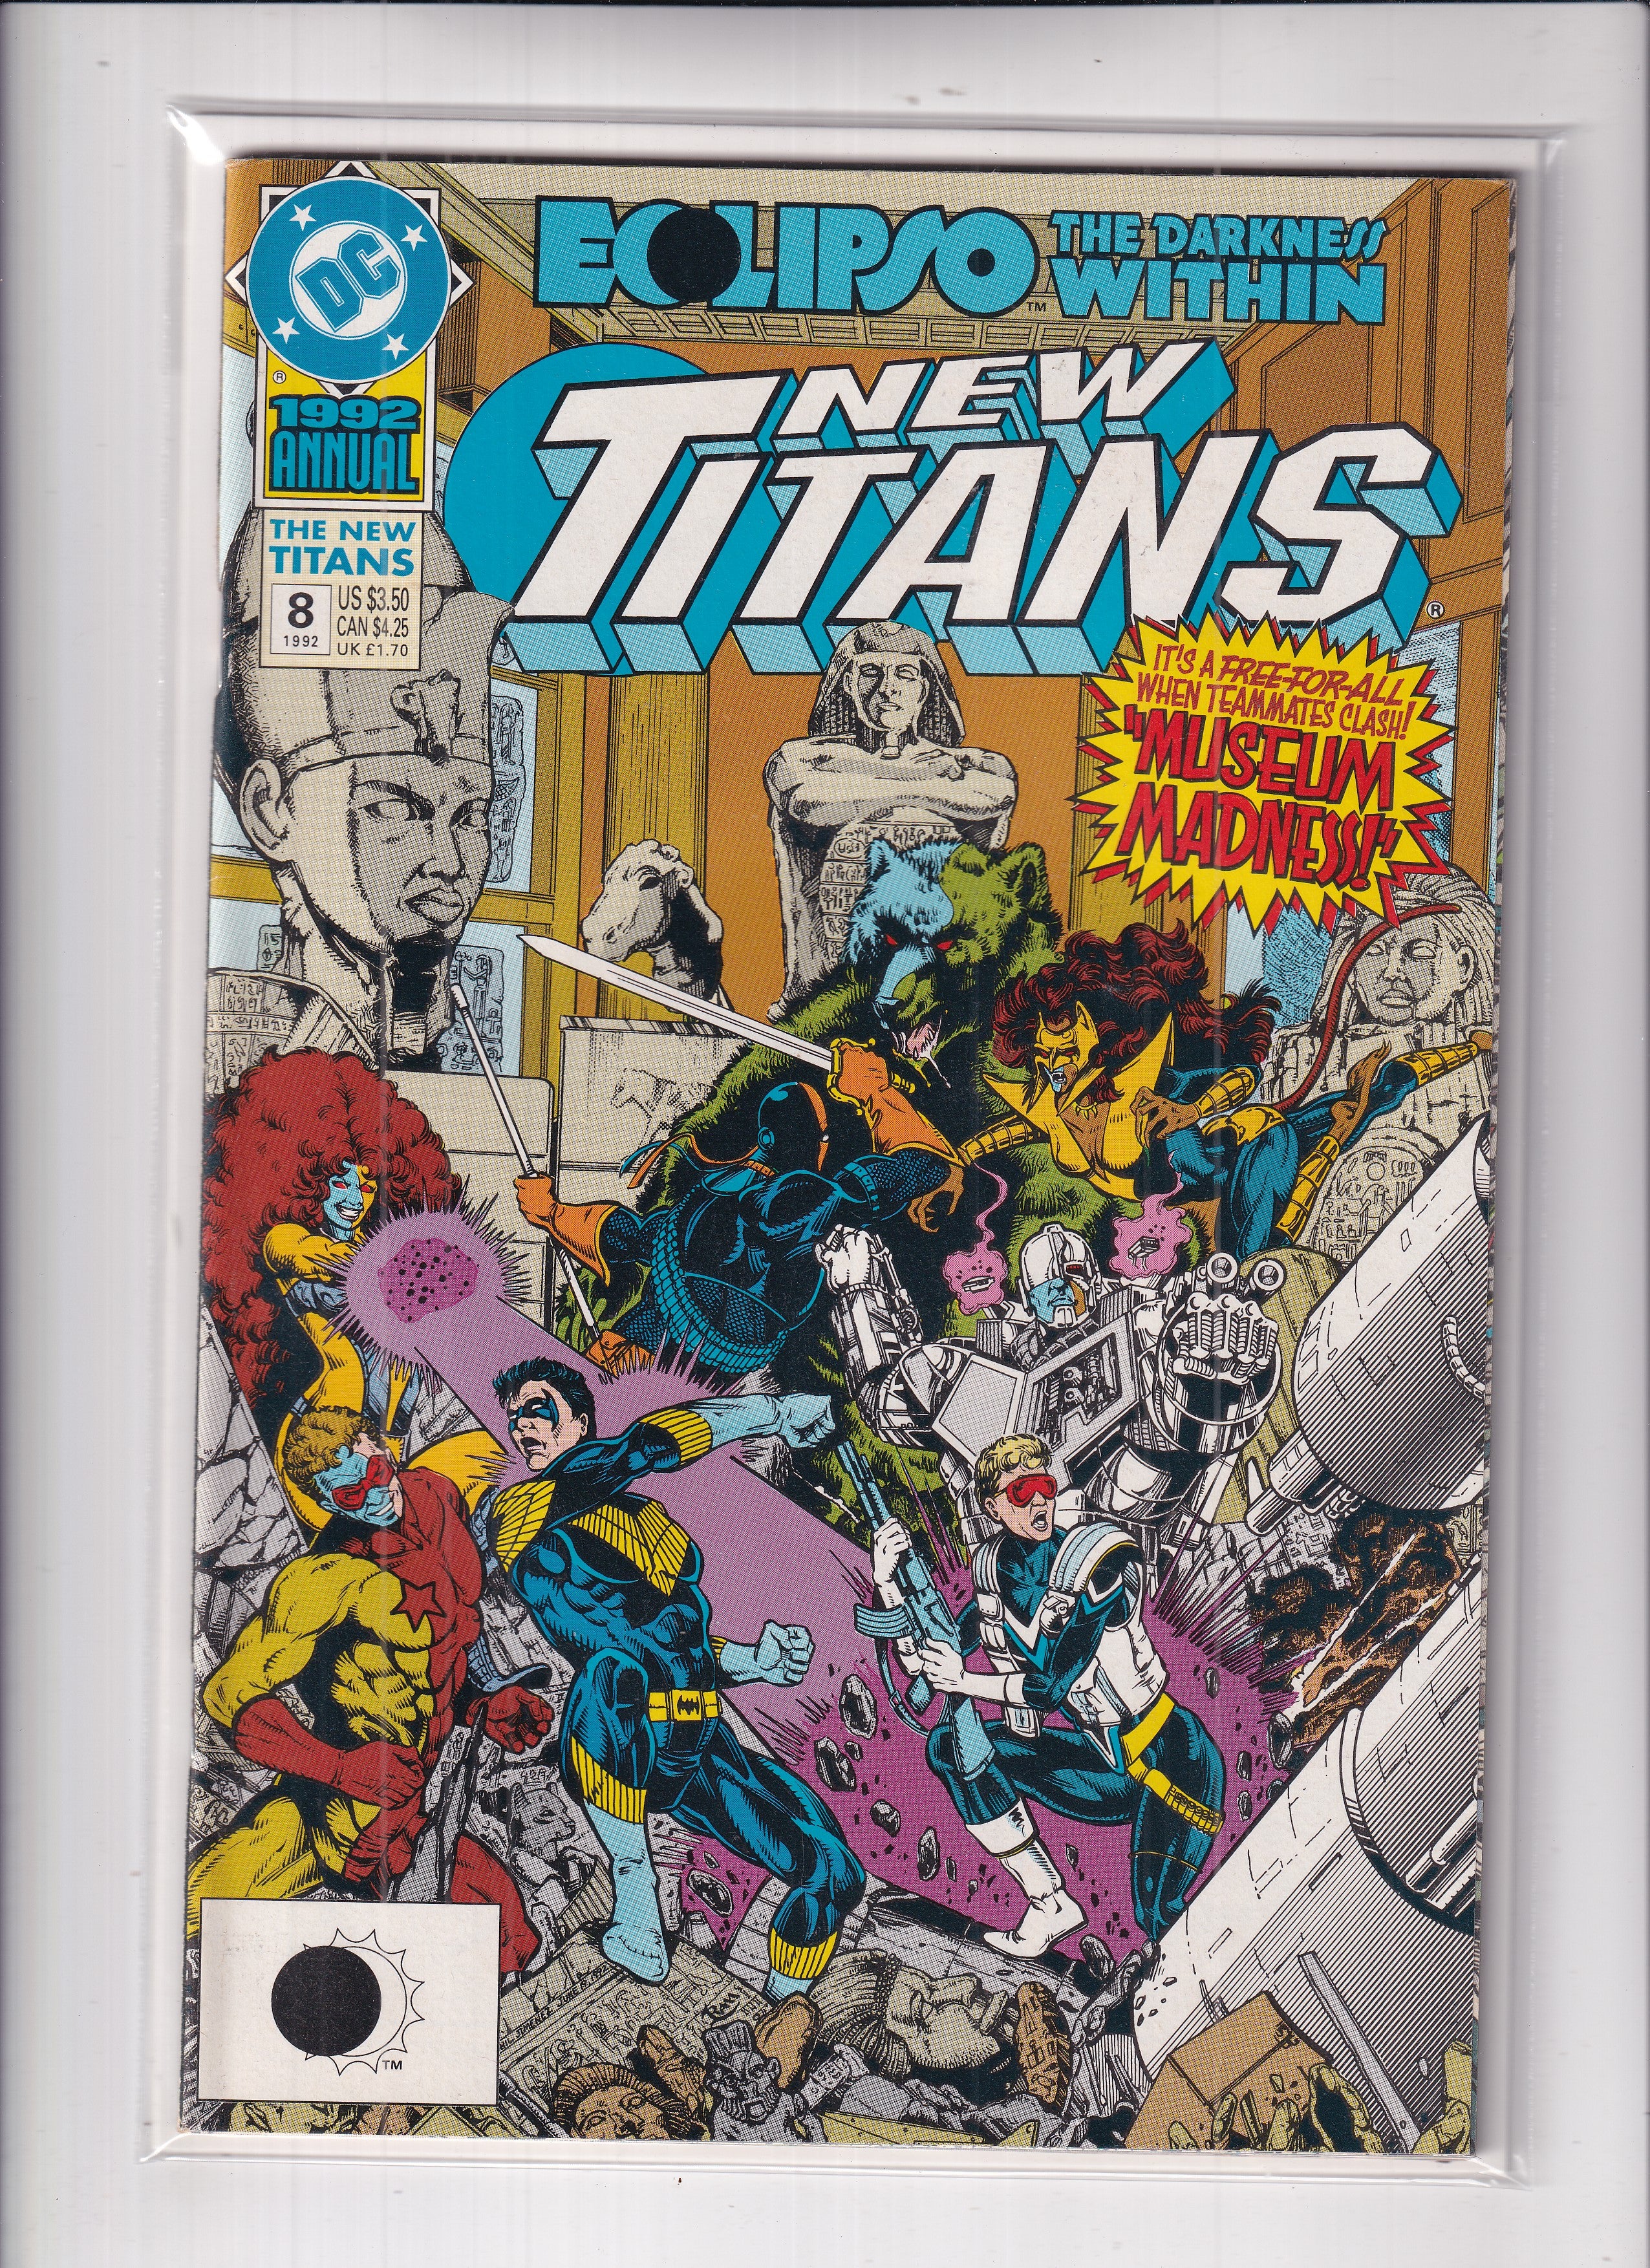 New Teen Titans Annual #8